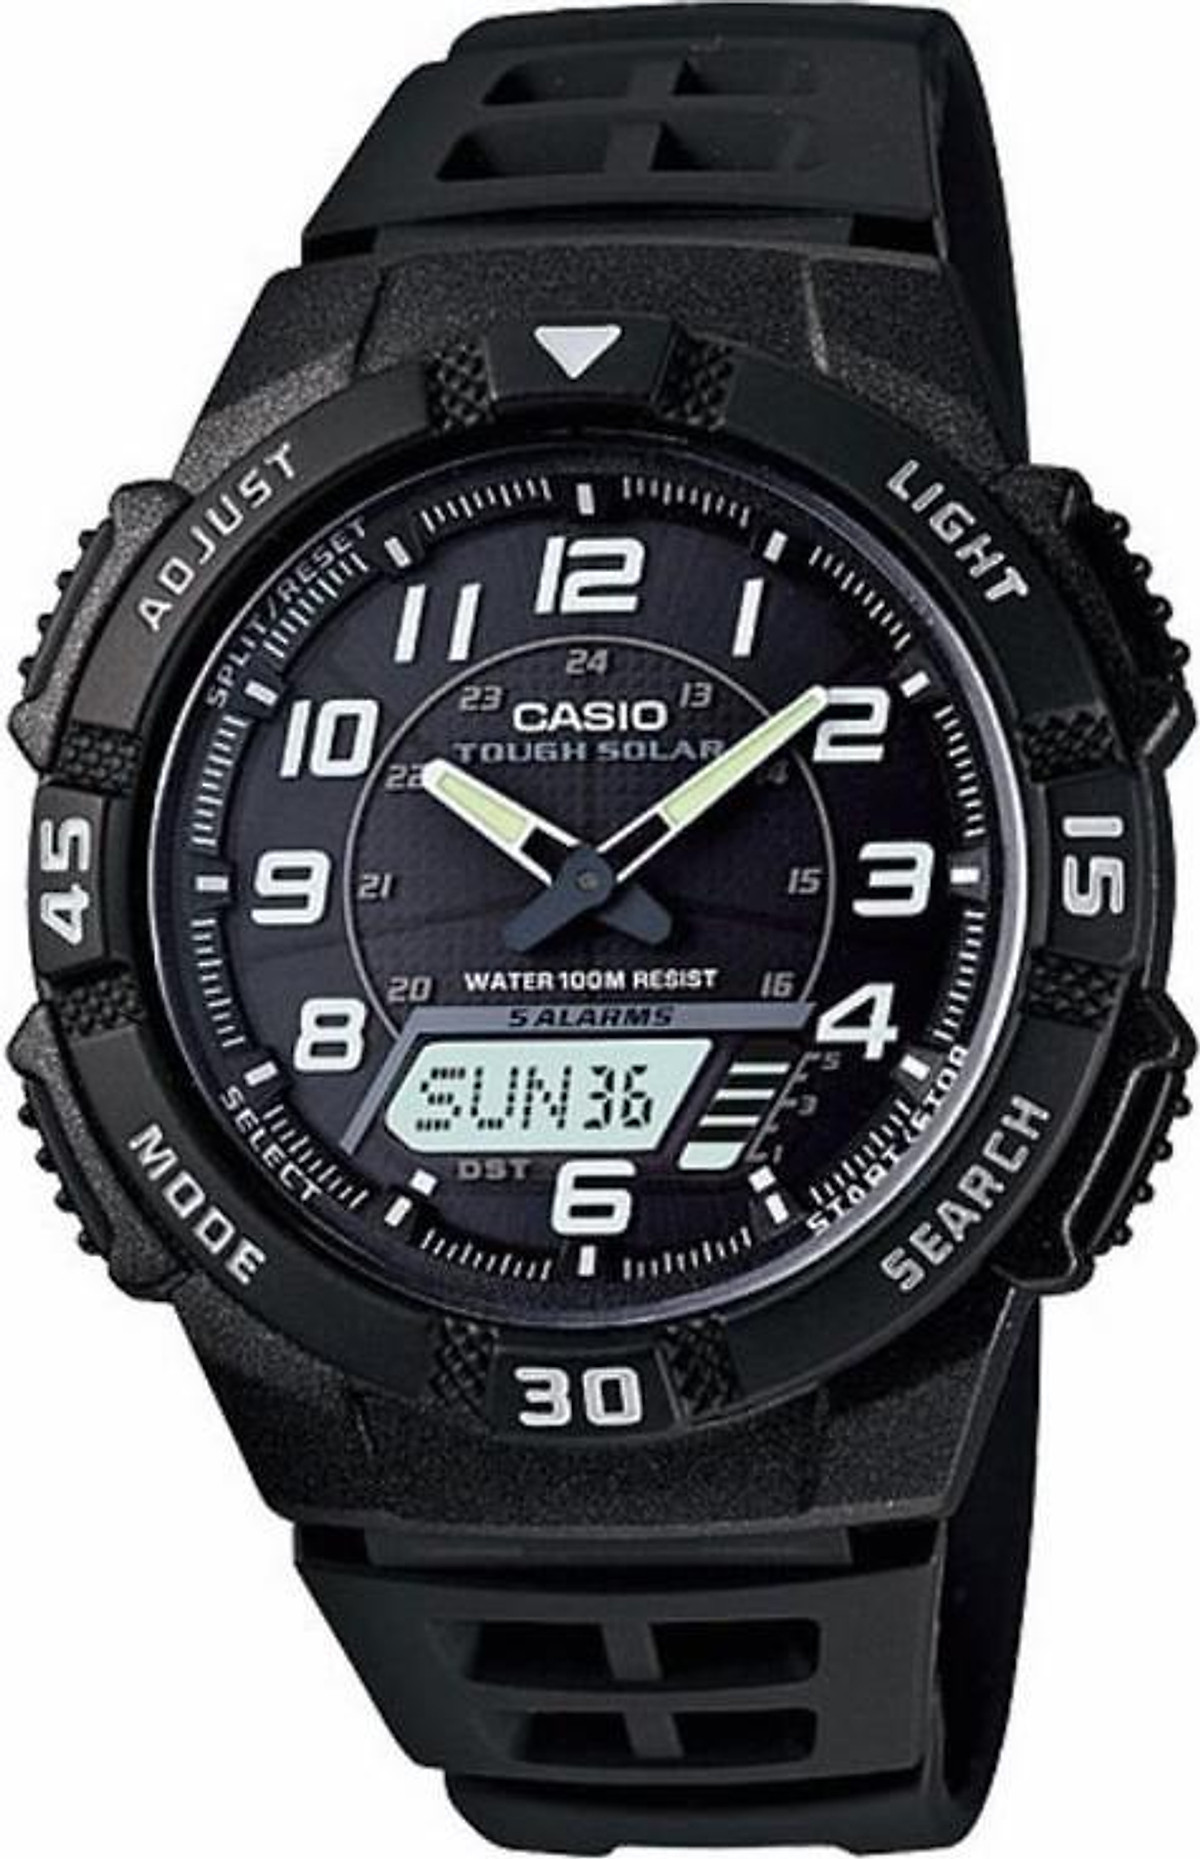 Khám phá đồng hồ Casio AQ-S800W-1BVDF